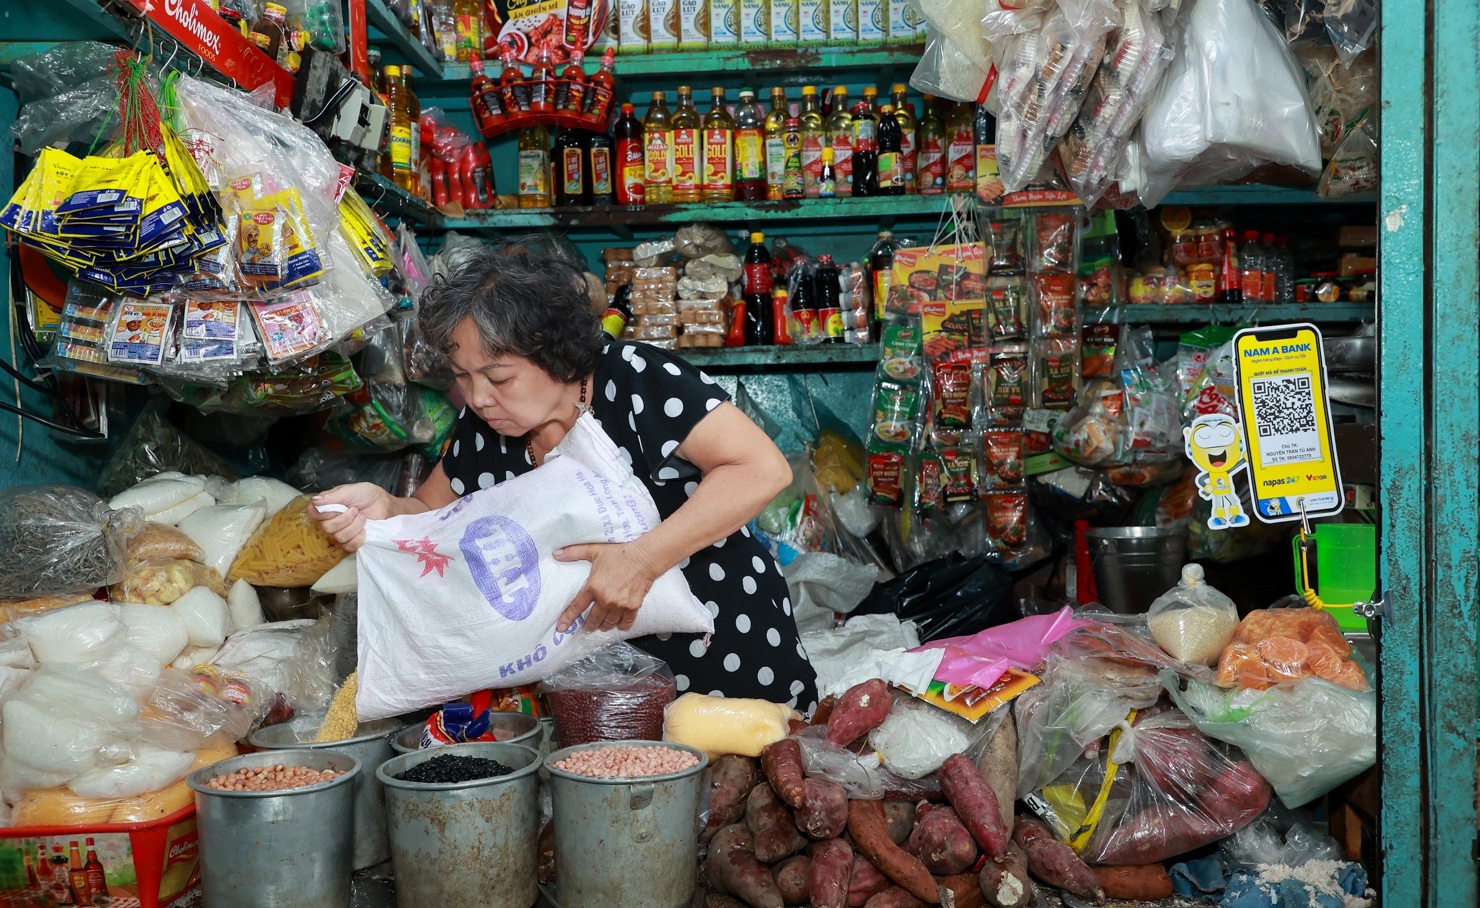 Quầy hàng đồ khô tại chợ Tân Định - TP. Hồ Chí Minh được trang bị mã QR để người mua dễ dàng thanh toán. Ảnh: NAB